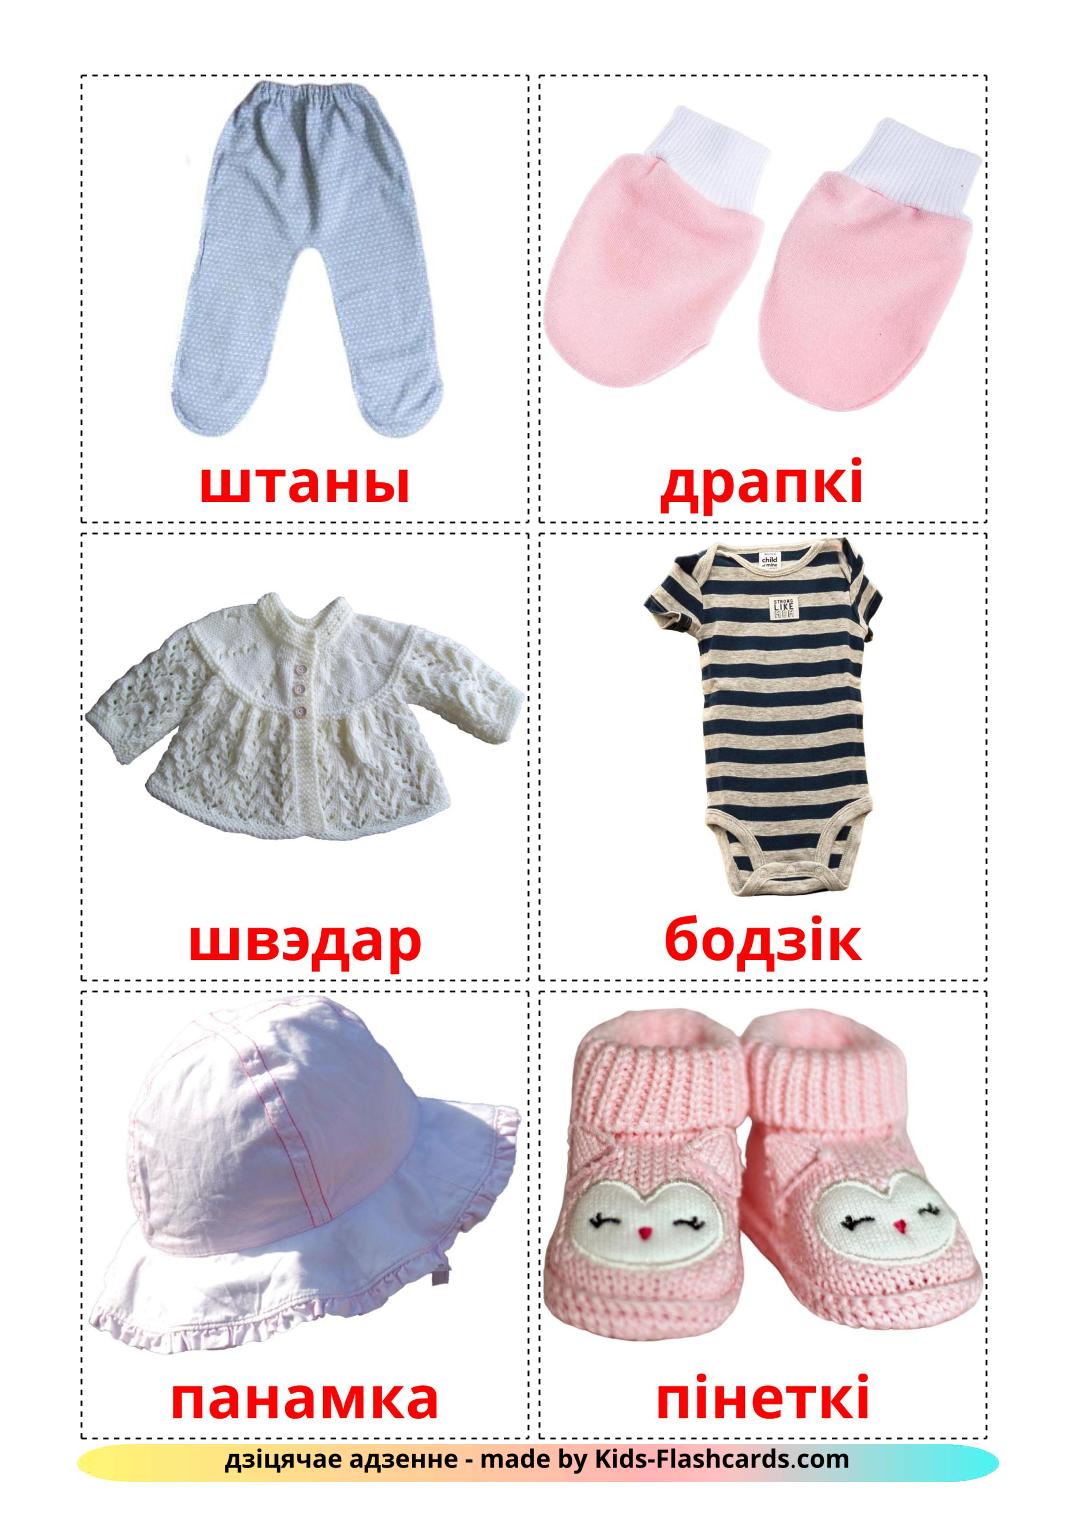 Roupas do Bebê - 11 Flashcards bielorrussoes gratuitos para impressão